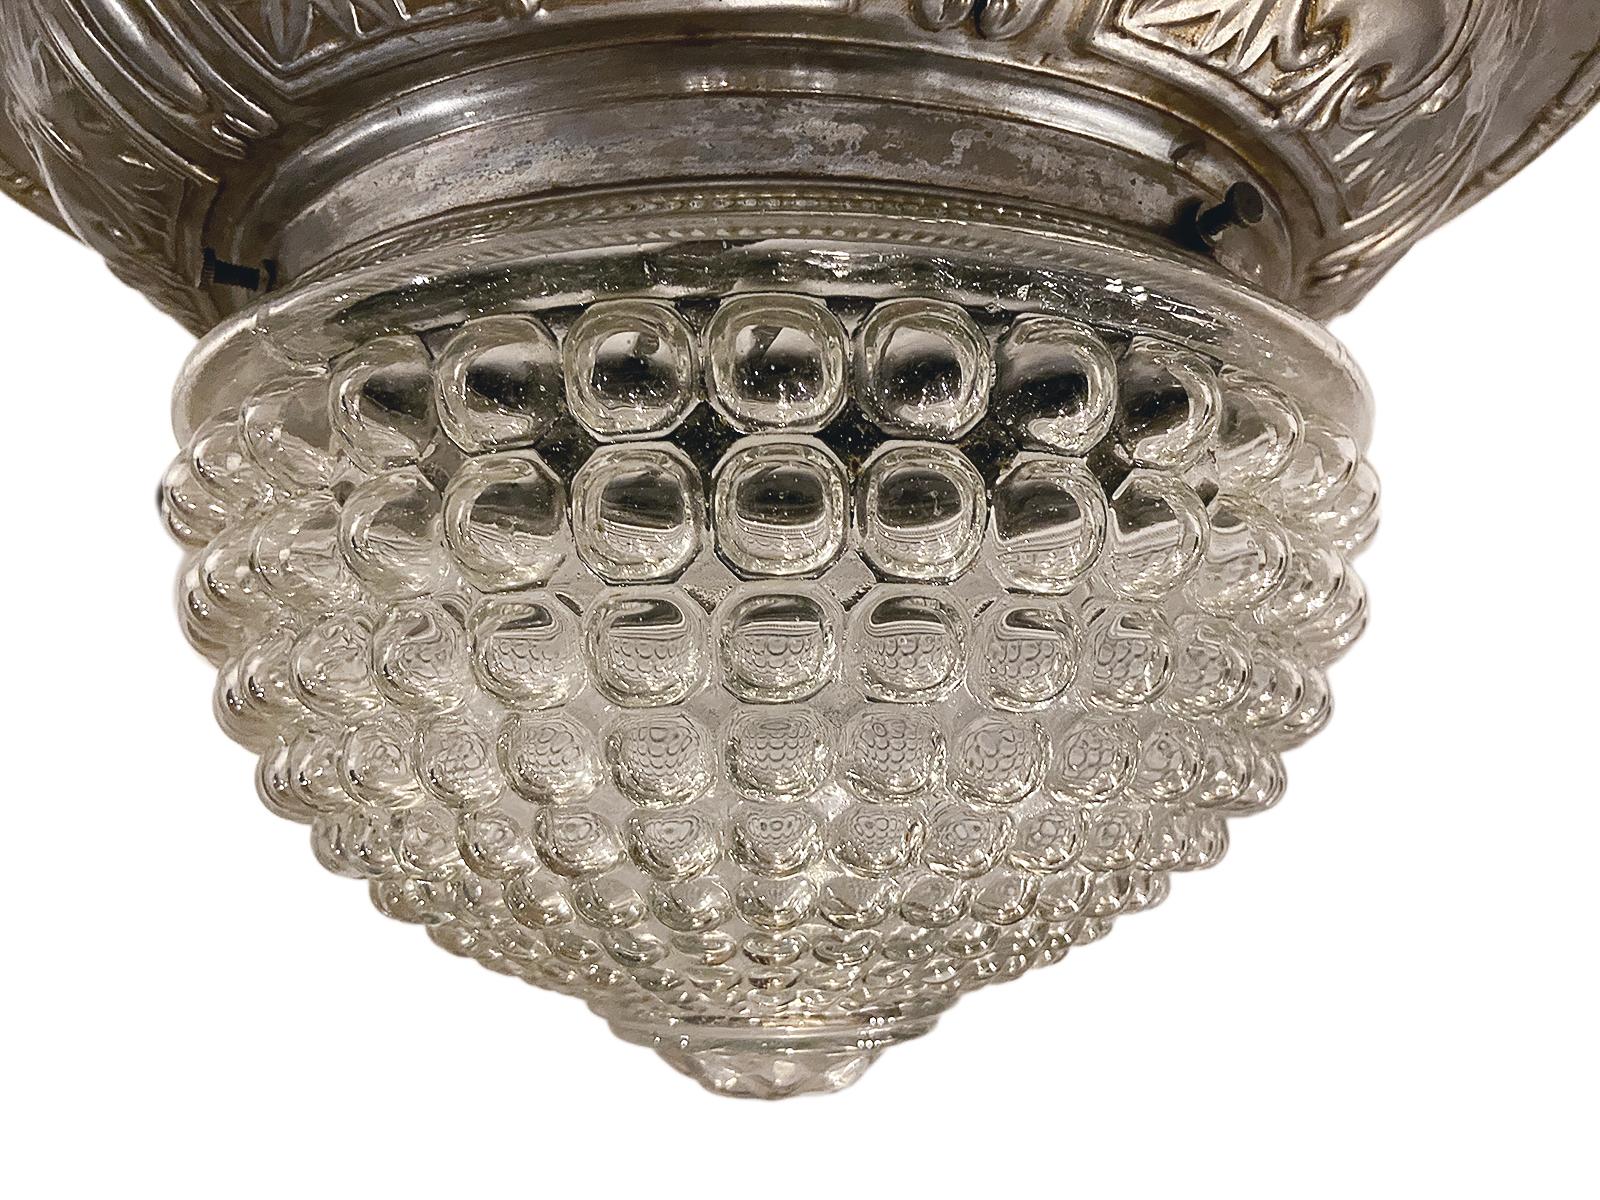 Luminaire en verre moulé français des années 1920 avec corps argenté repoussé.

Mesures :
Diamètre 14.5